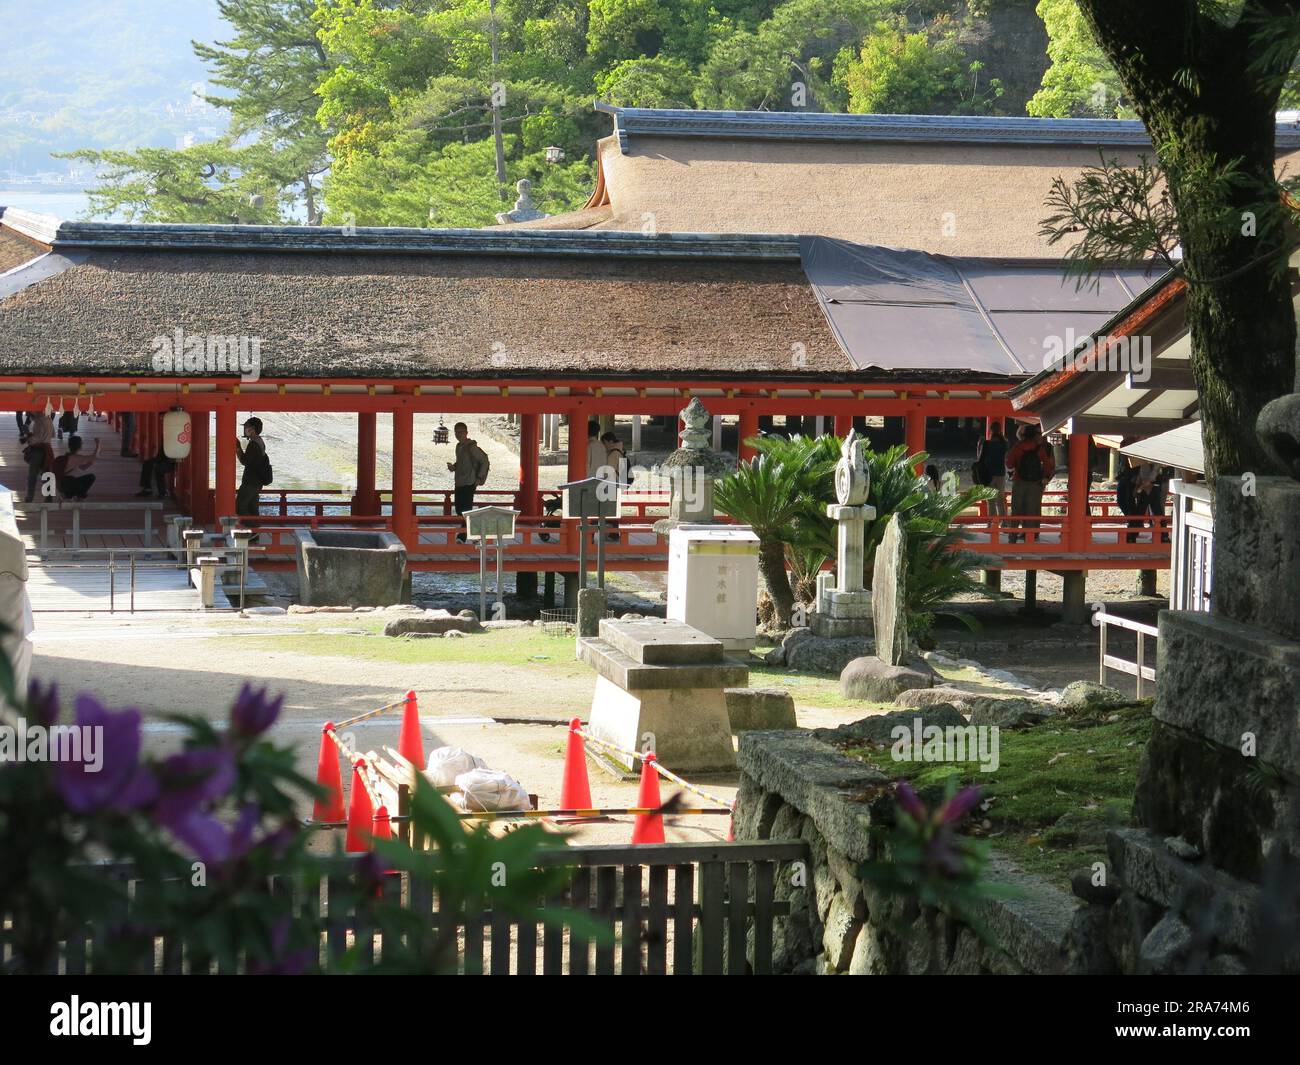 Una delle attrazioni culturali di visitare il Giappone è visitare un santuario shintoista, qui il santuario Itsukushima sull'isola di Miyajima, costruito su palafitte. Foto Stock